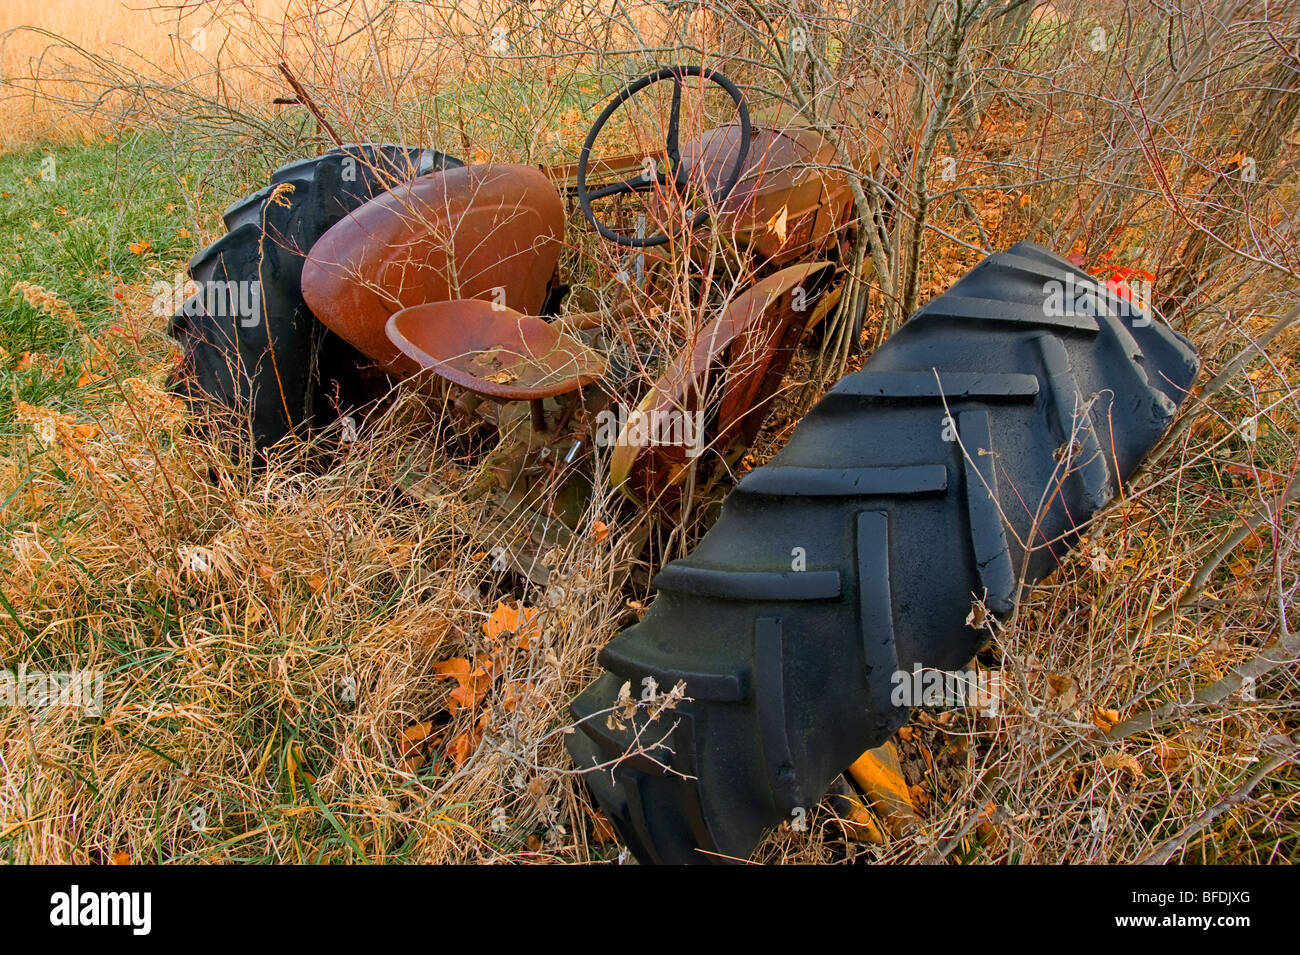 Este tractor agrícola oxidado fue dejado en un campo donde la maleza ha crecido hasta sobre ella. La rueda separados y caerse. Foto de stock